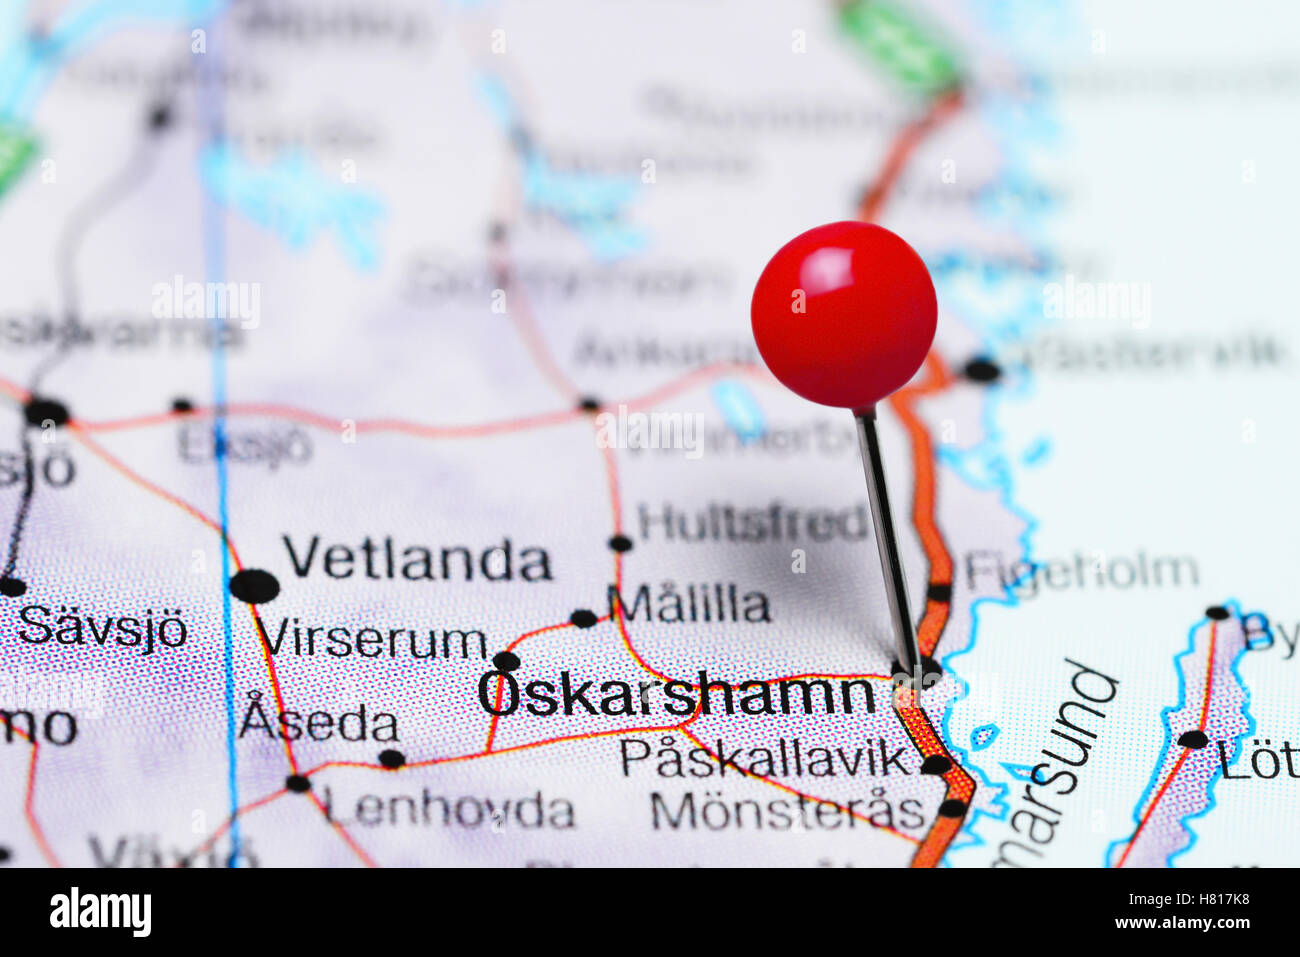 Oskarshamn pinned on a map of Sweden Stock Photo